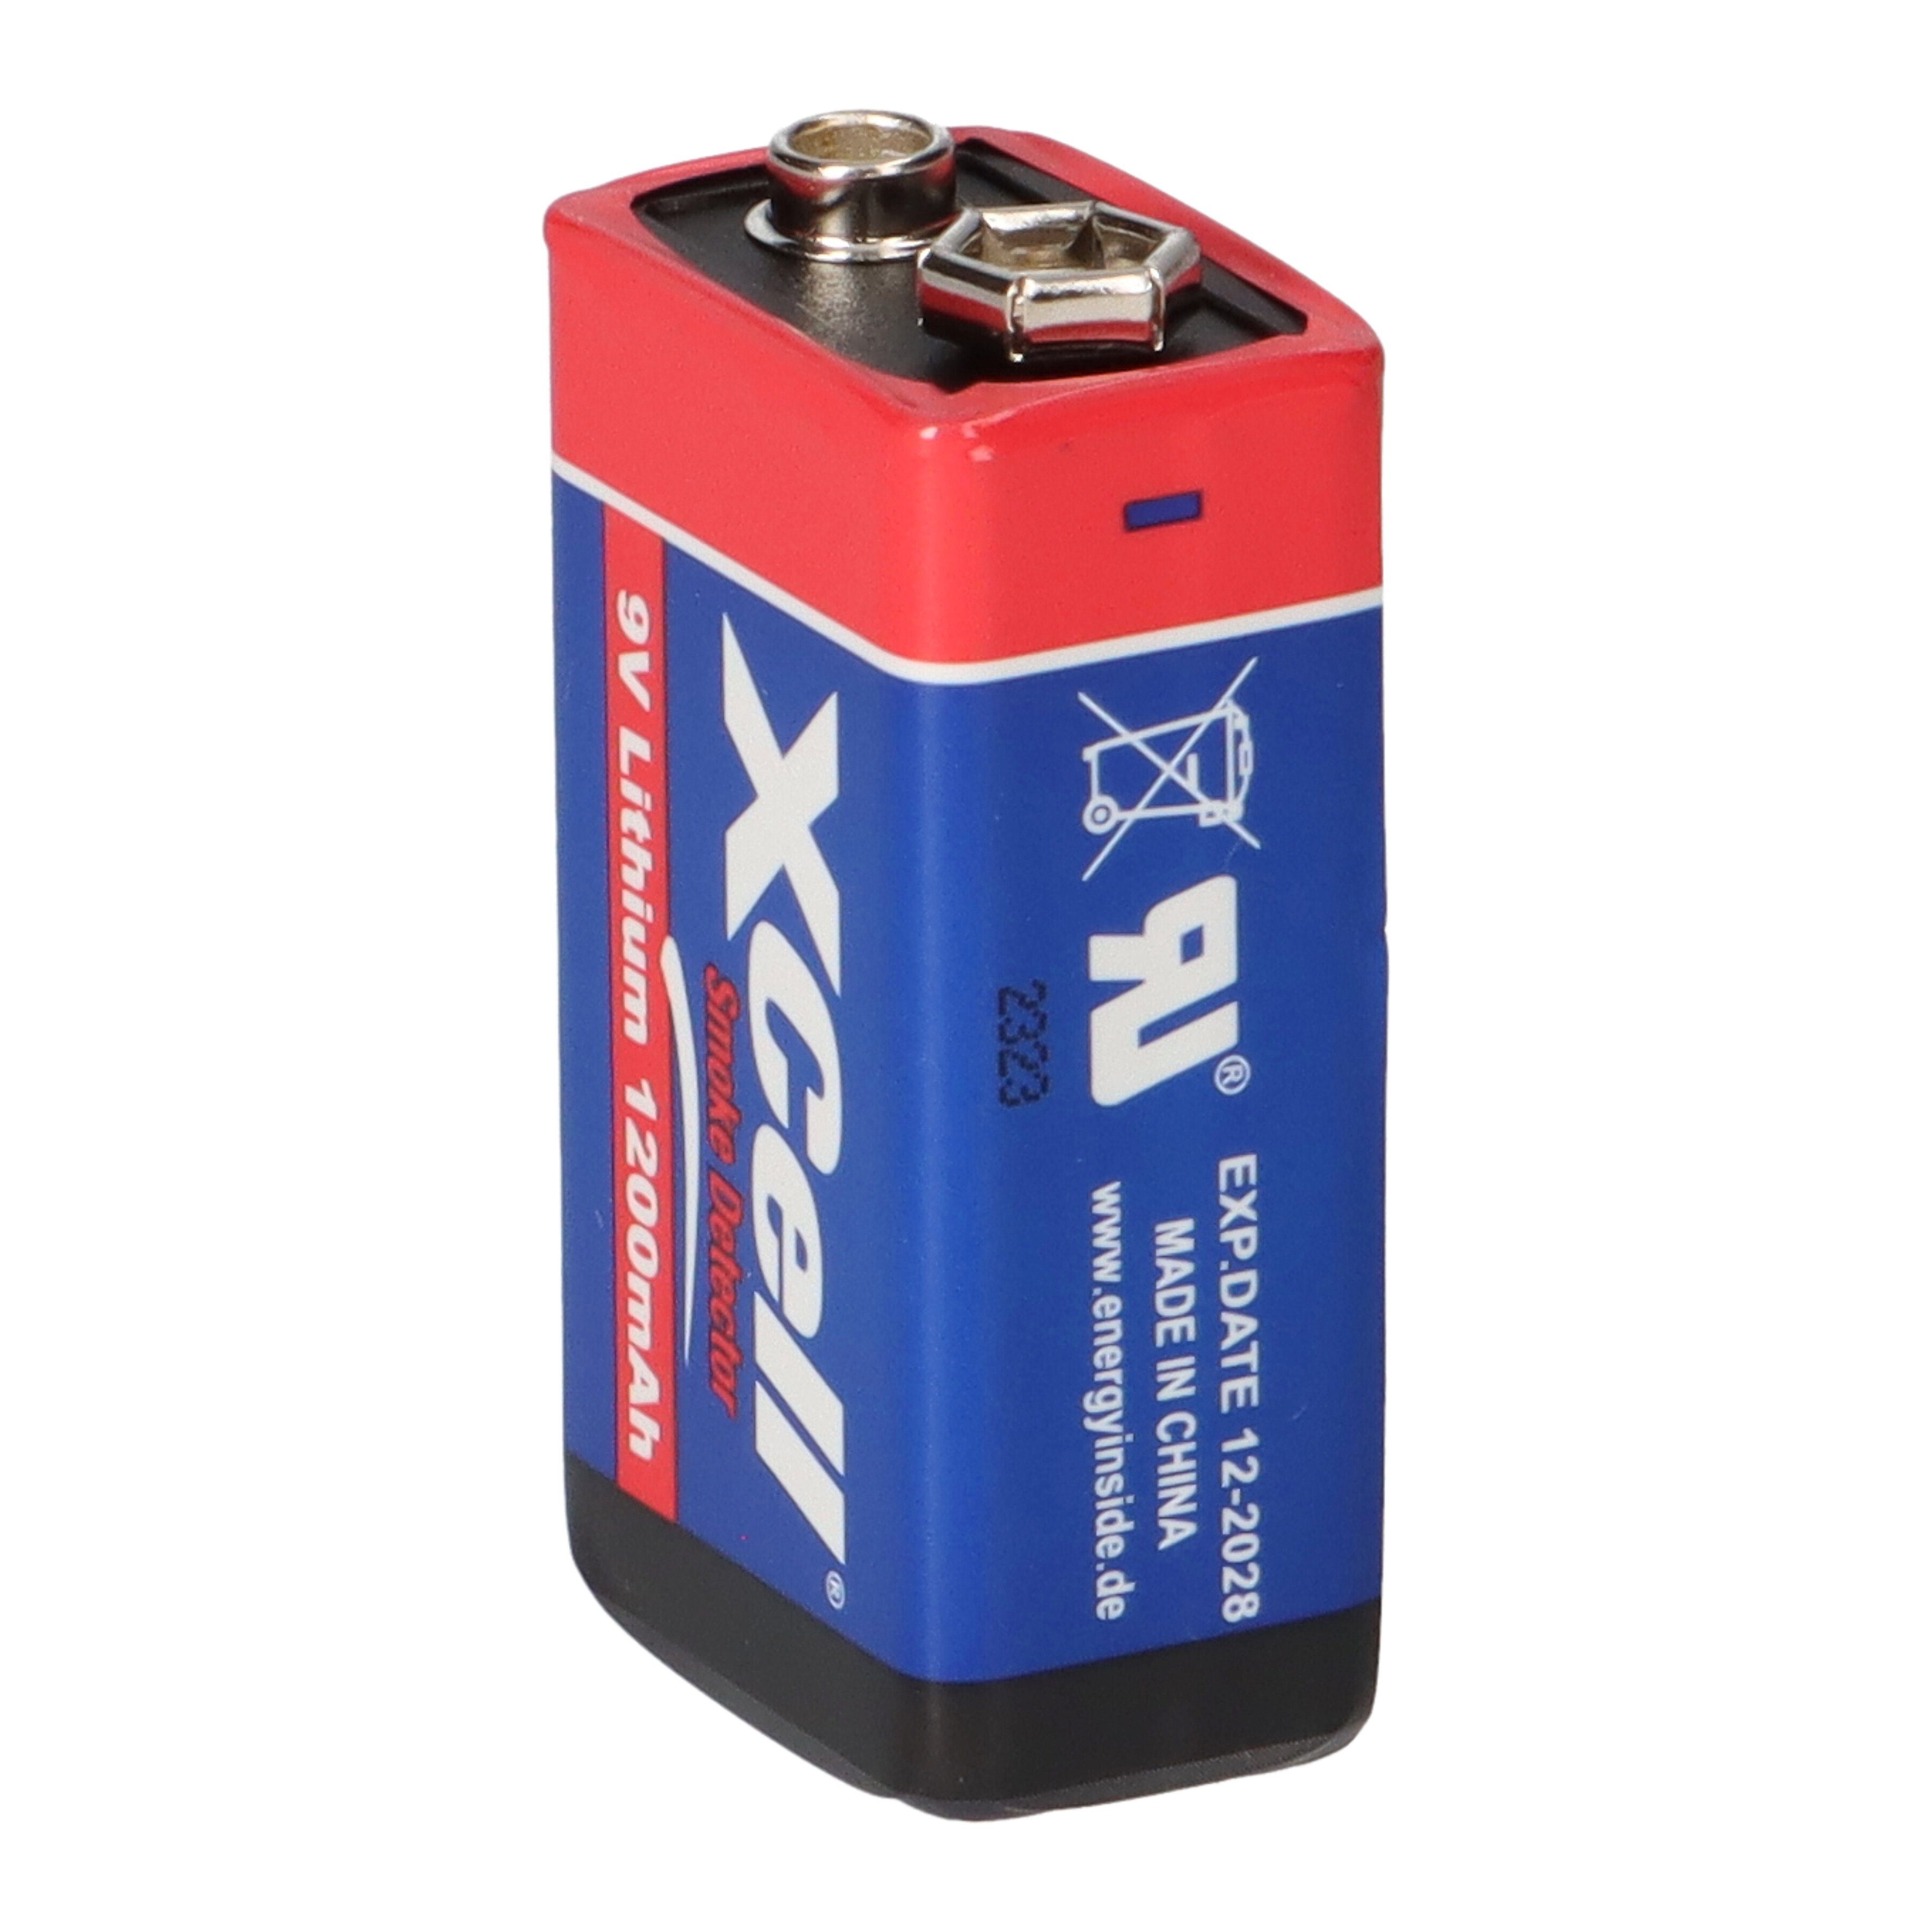 XCell für Lithium Batterien Block XCell Rauchmelder / Batterie 9V Hochleistungs- 10x